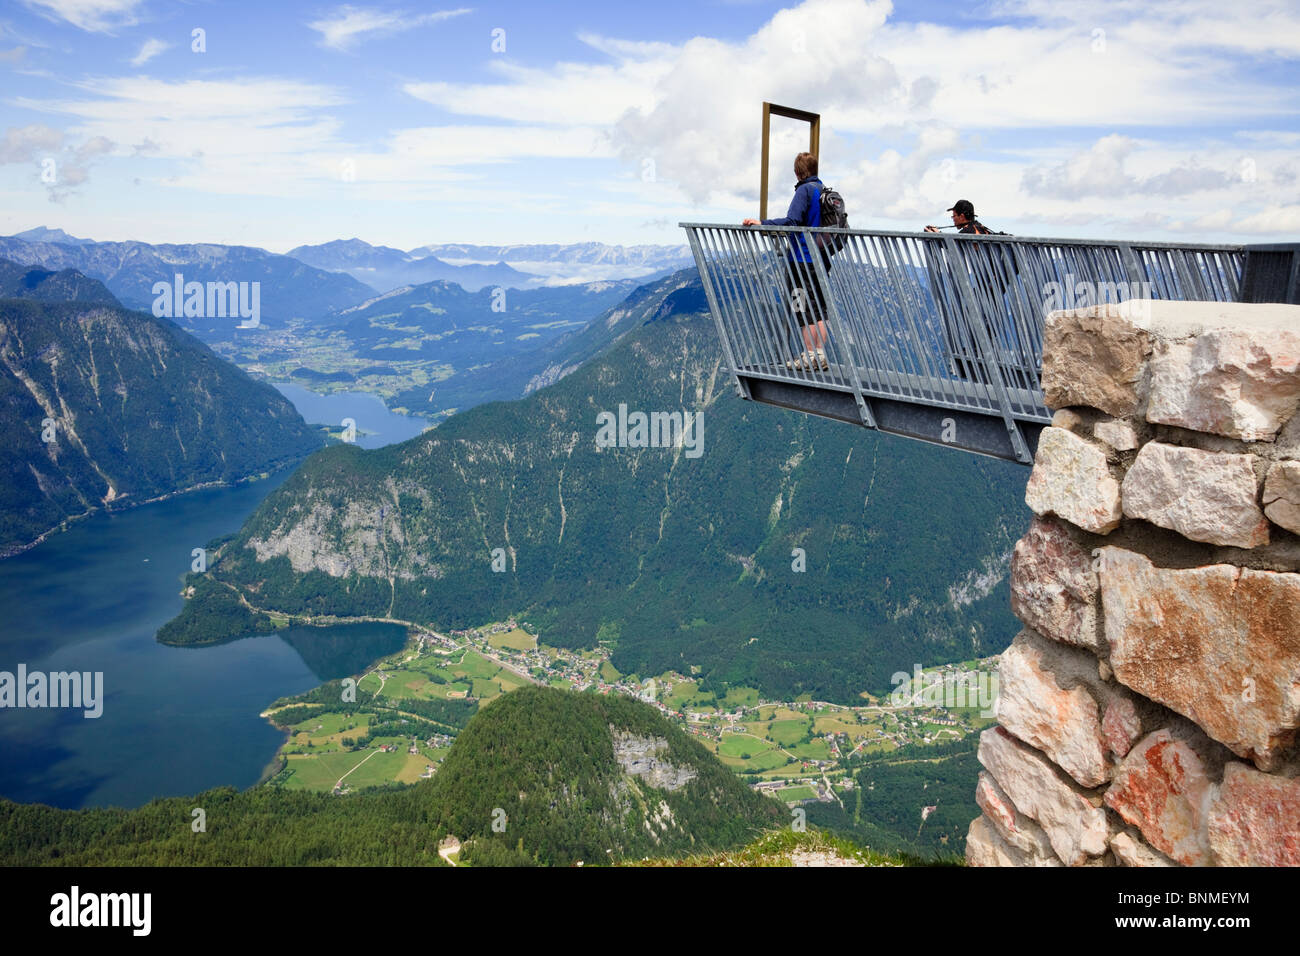 Persone su 5dita piattaforma di osservazione sul Krippenstein mountain al Dachstein sito Patrimonio Mondiale che si affaccia sul lago Hallstattersee nelle Alpi austriache Austria Foto Stock